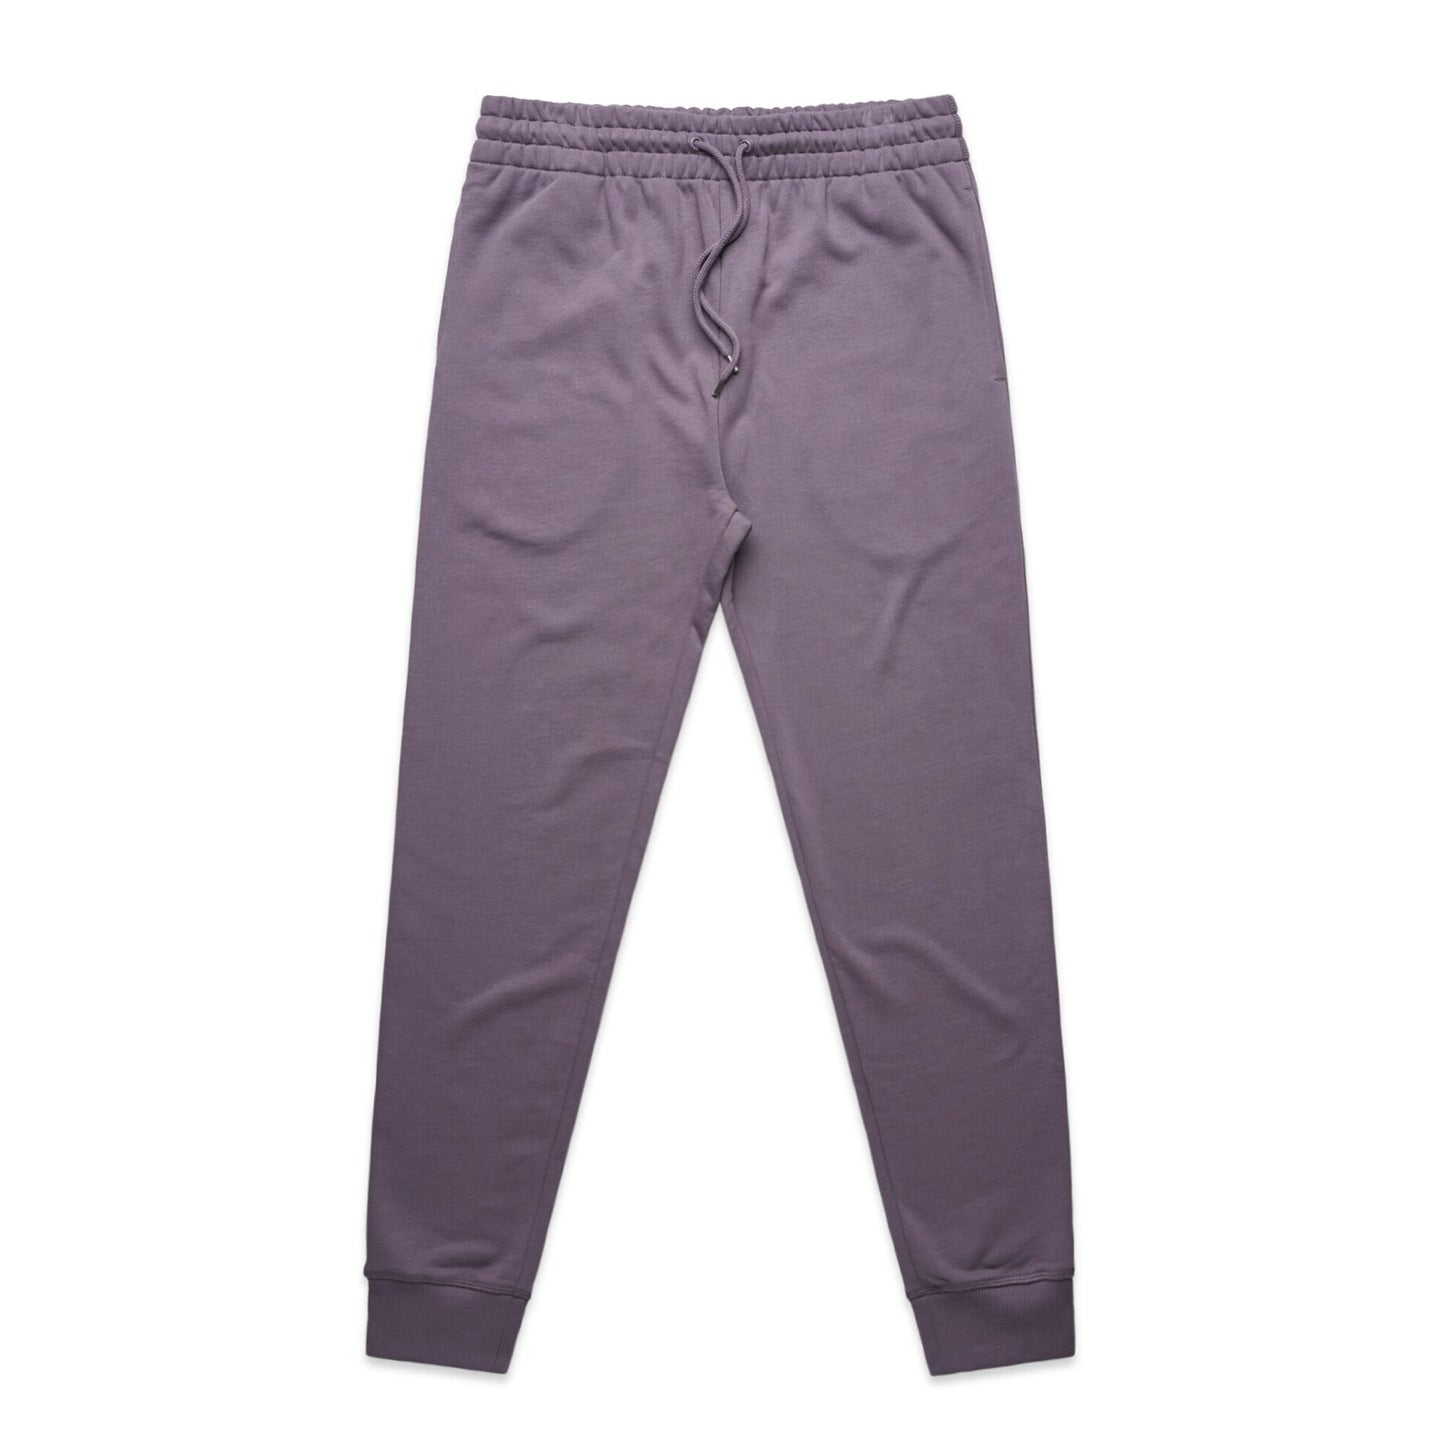 Ascolour Mens Premium Track Pants (5920)